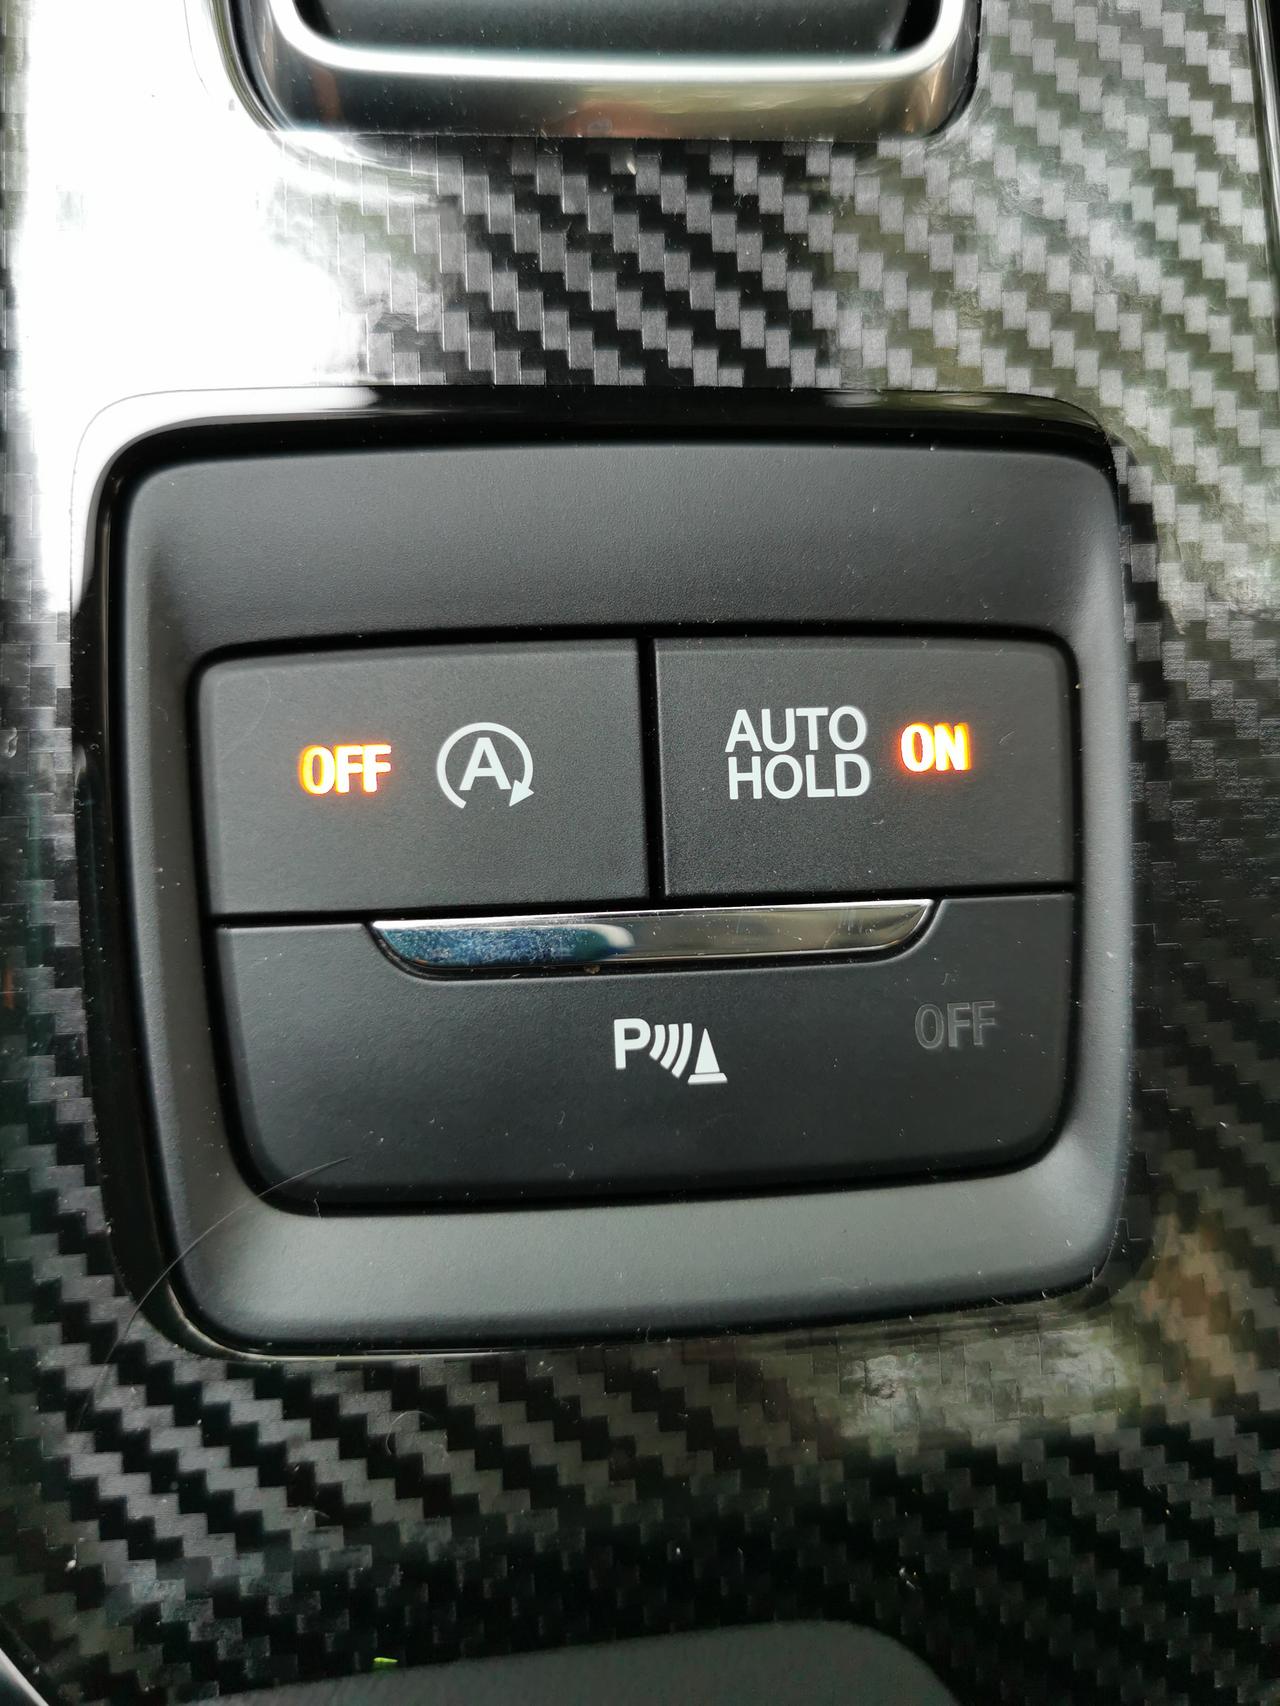 福特锐界 问下各位车友：发动机自动启停在哪里能永久关闭？菜单里找遍了都没看到，每次都需要按启停键太麻烦了。